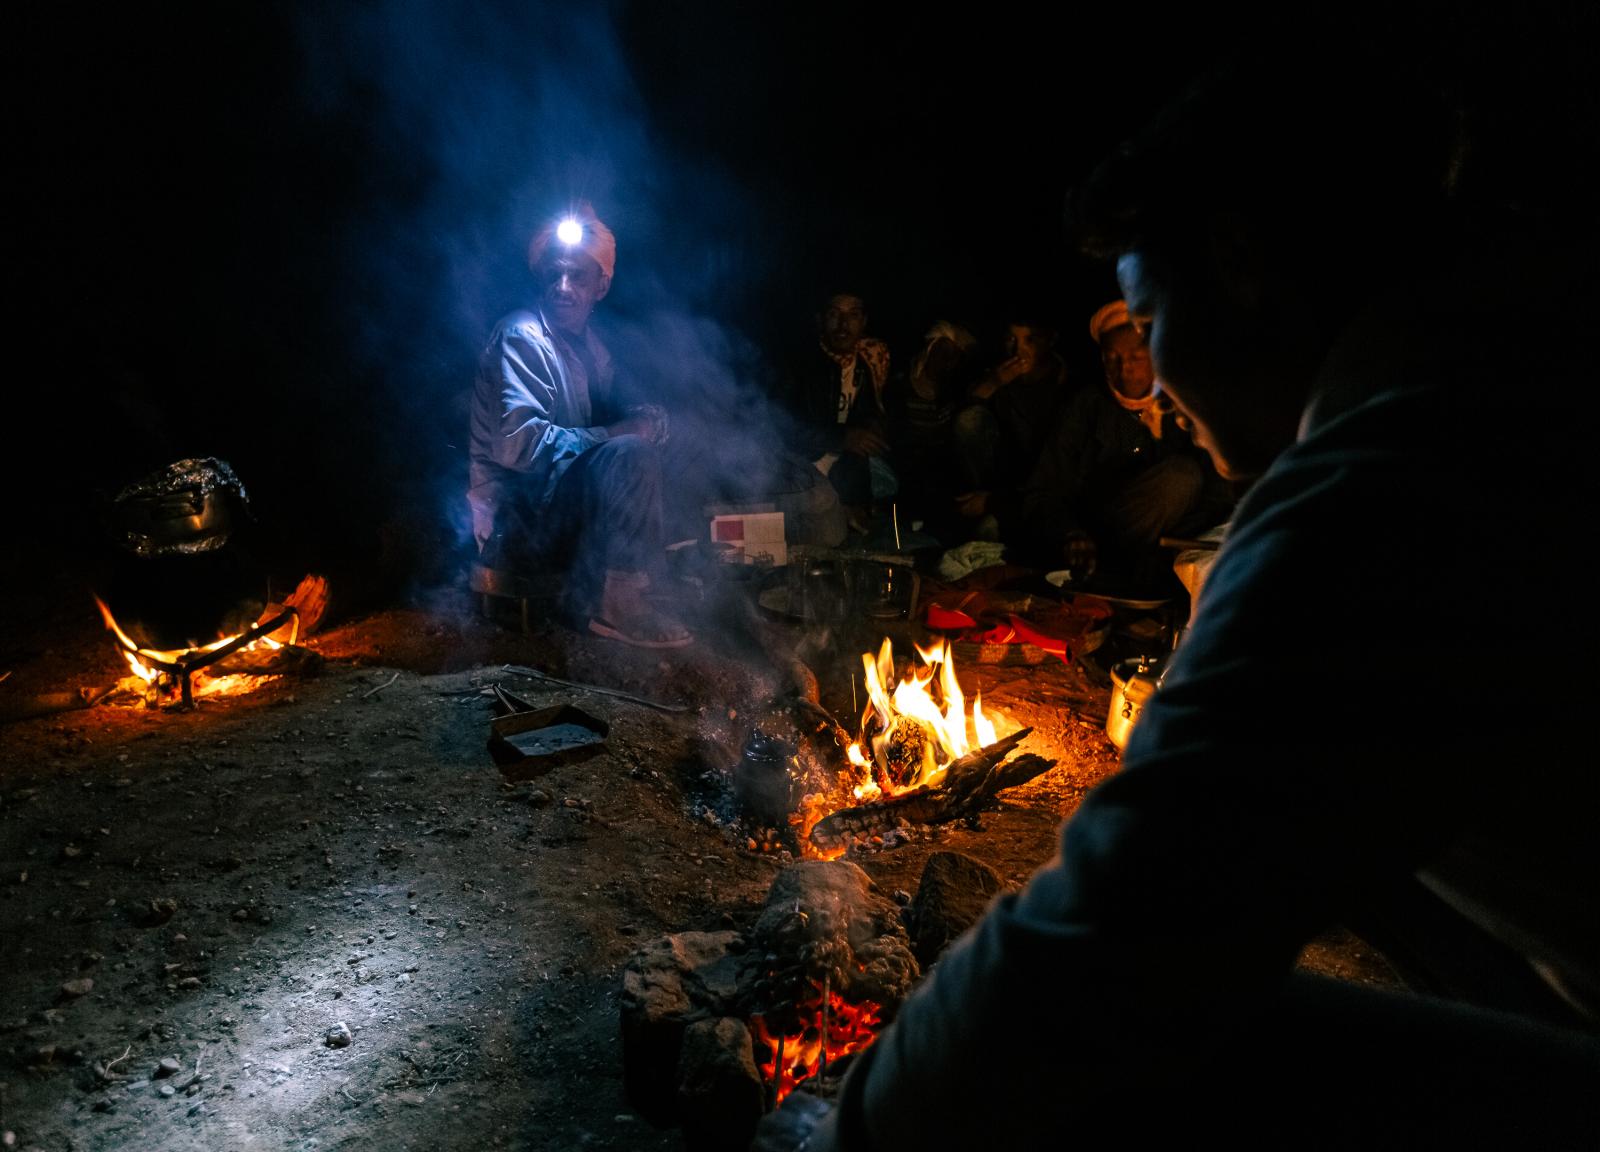 Maroc, les derniers nomades